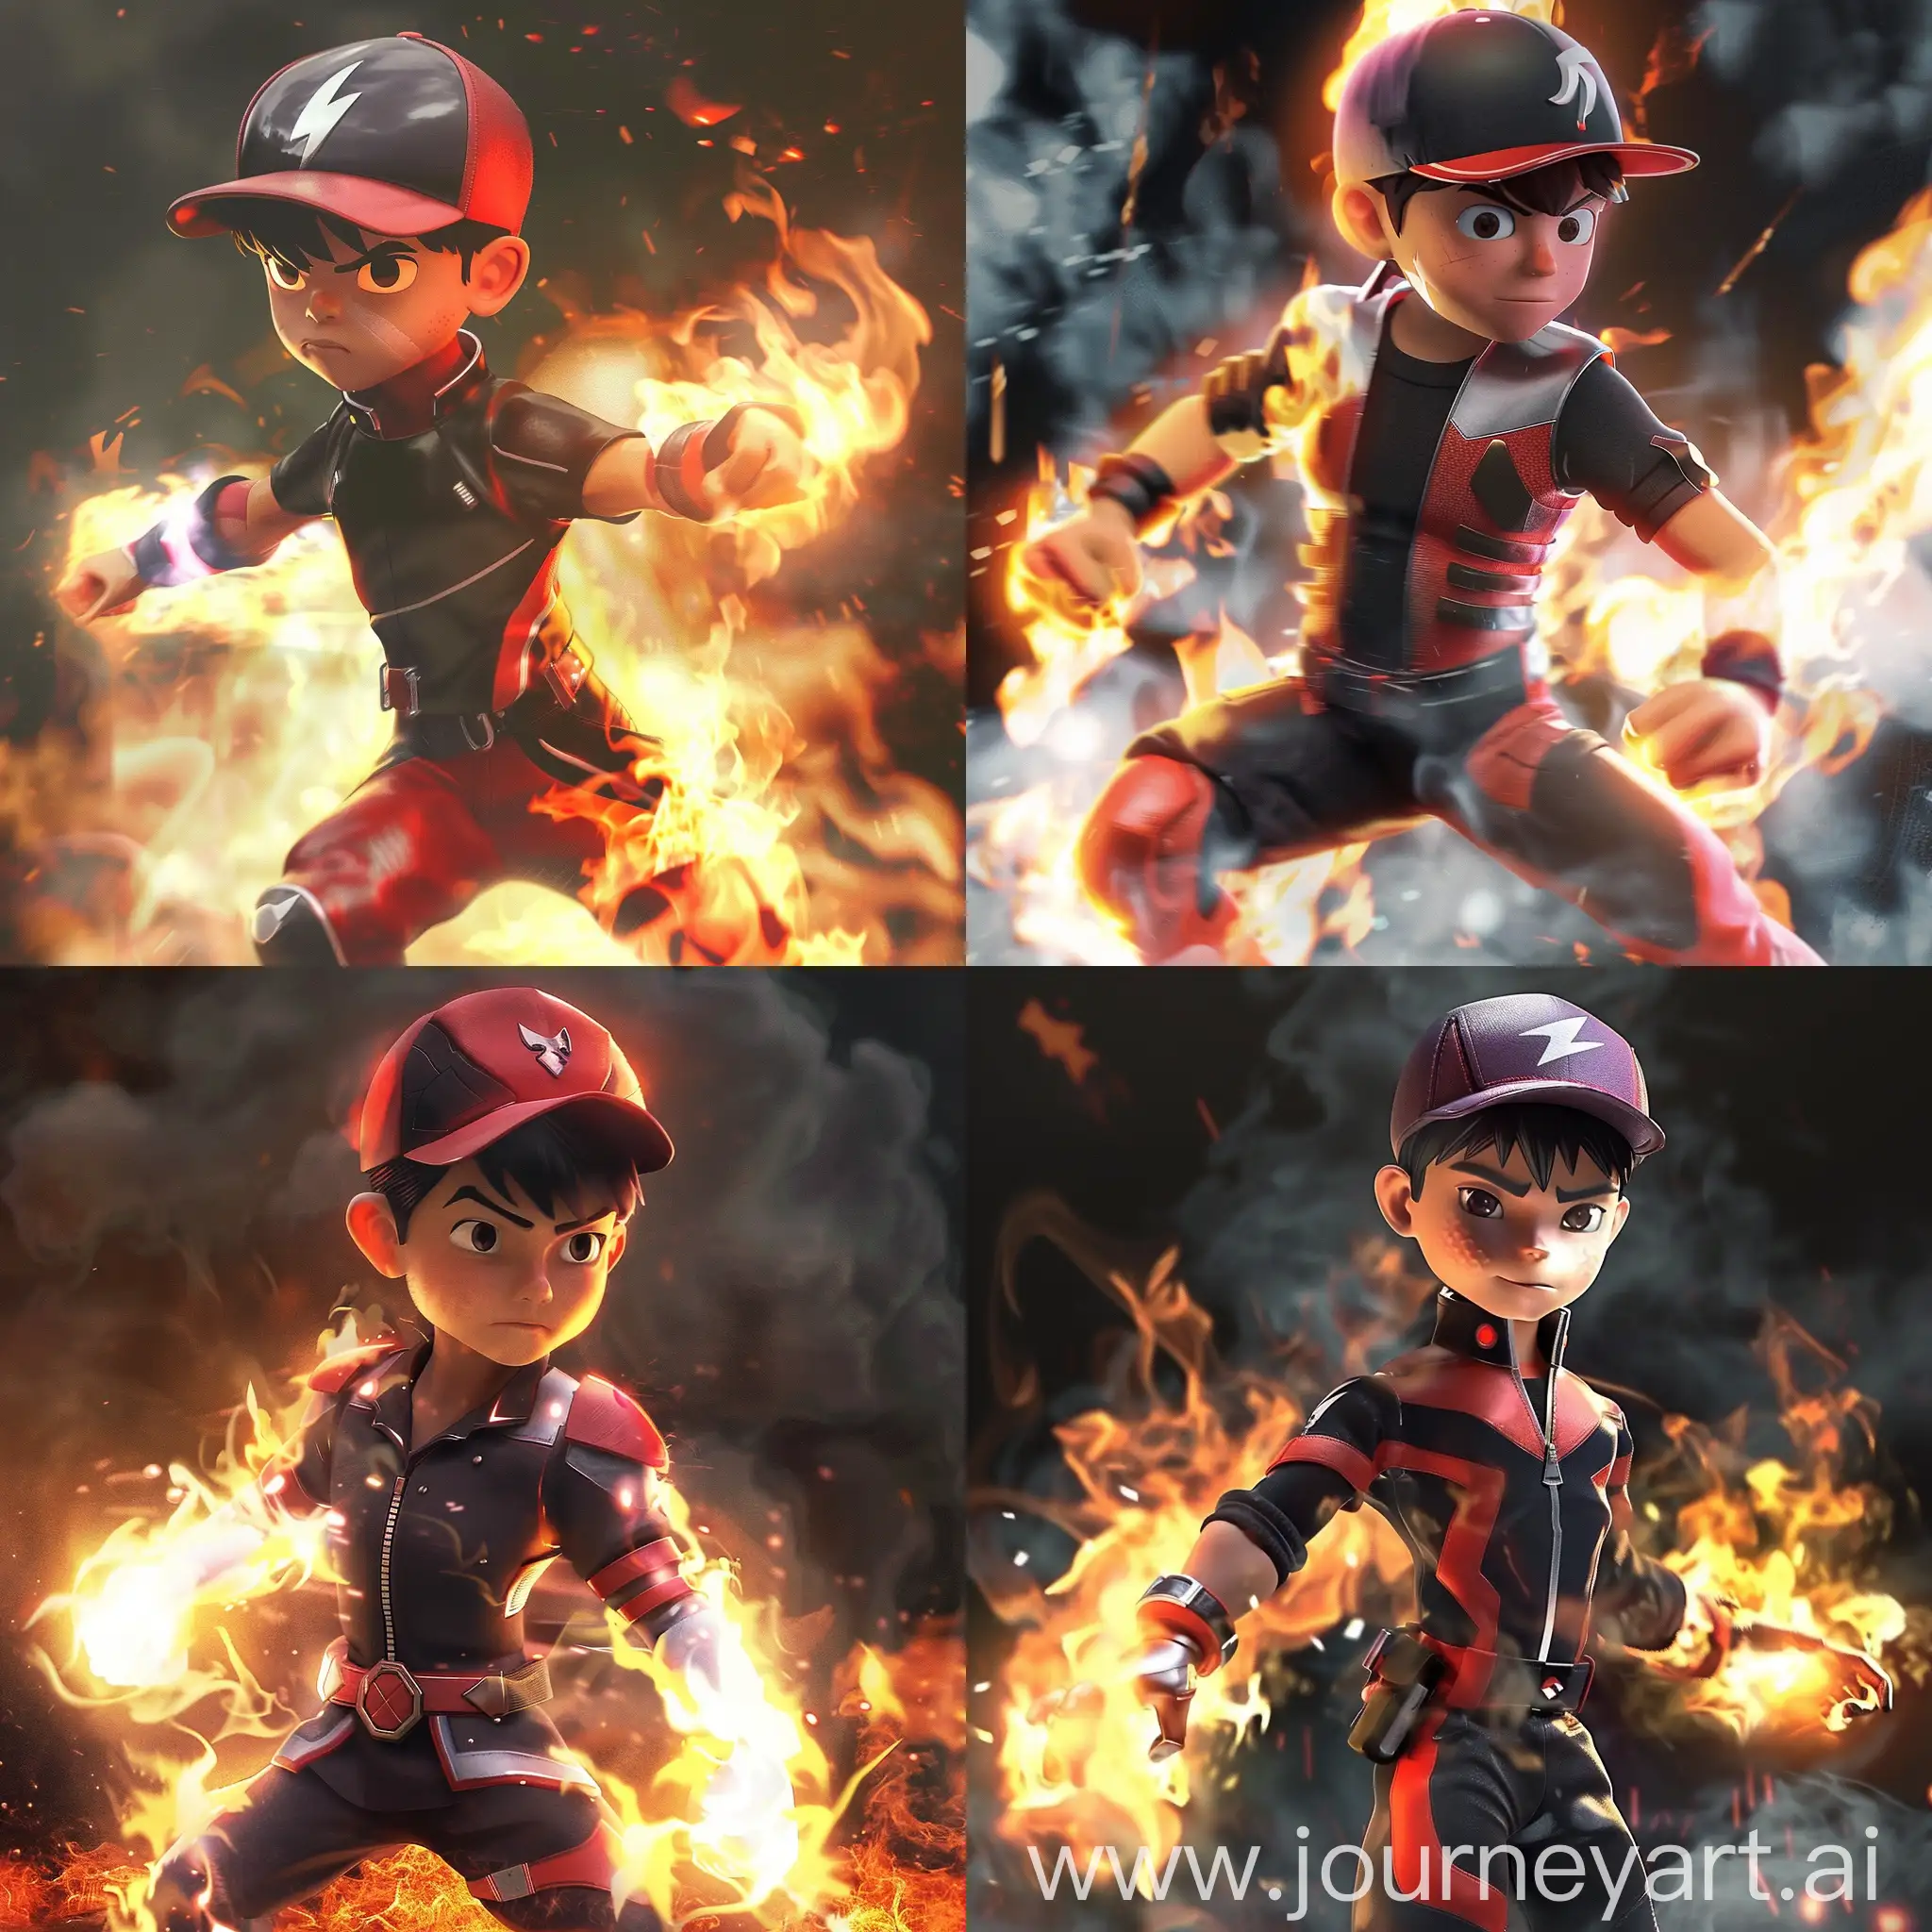 Dynamic-Boy-with-Powerful-Fire-Abilities-in-Intense-Battle-Scene